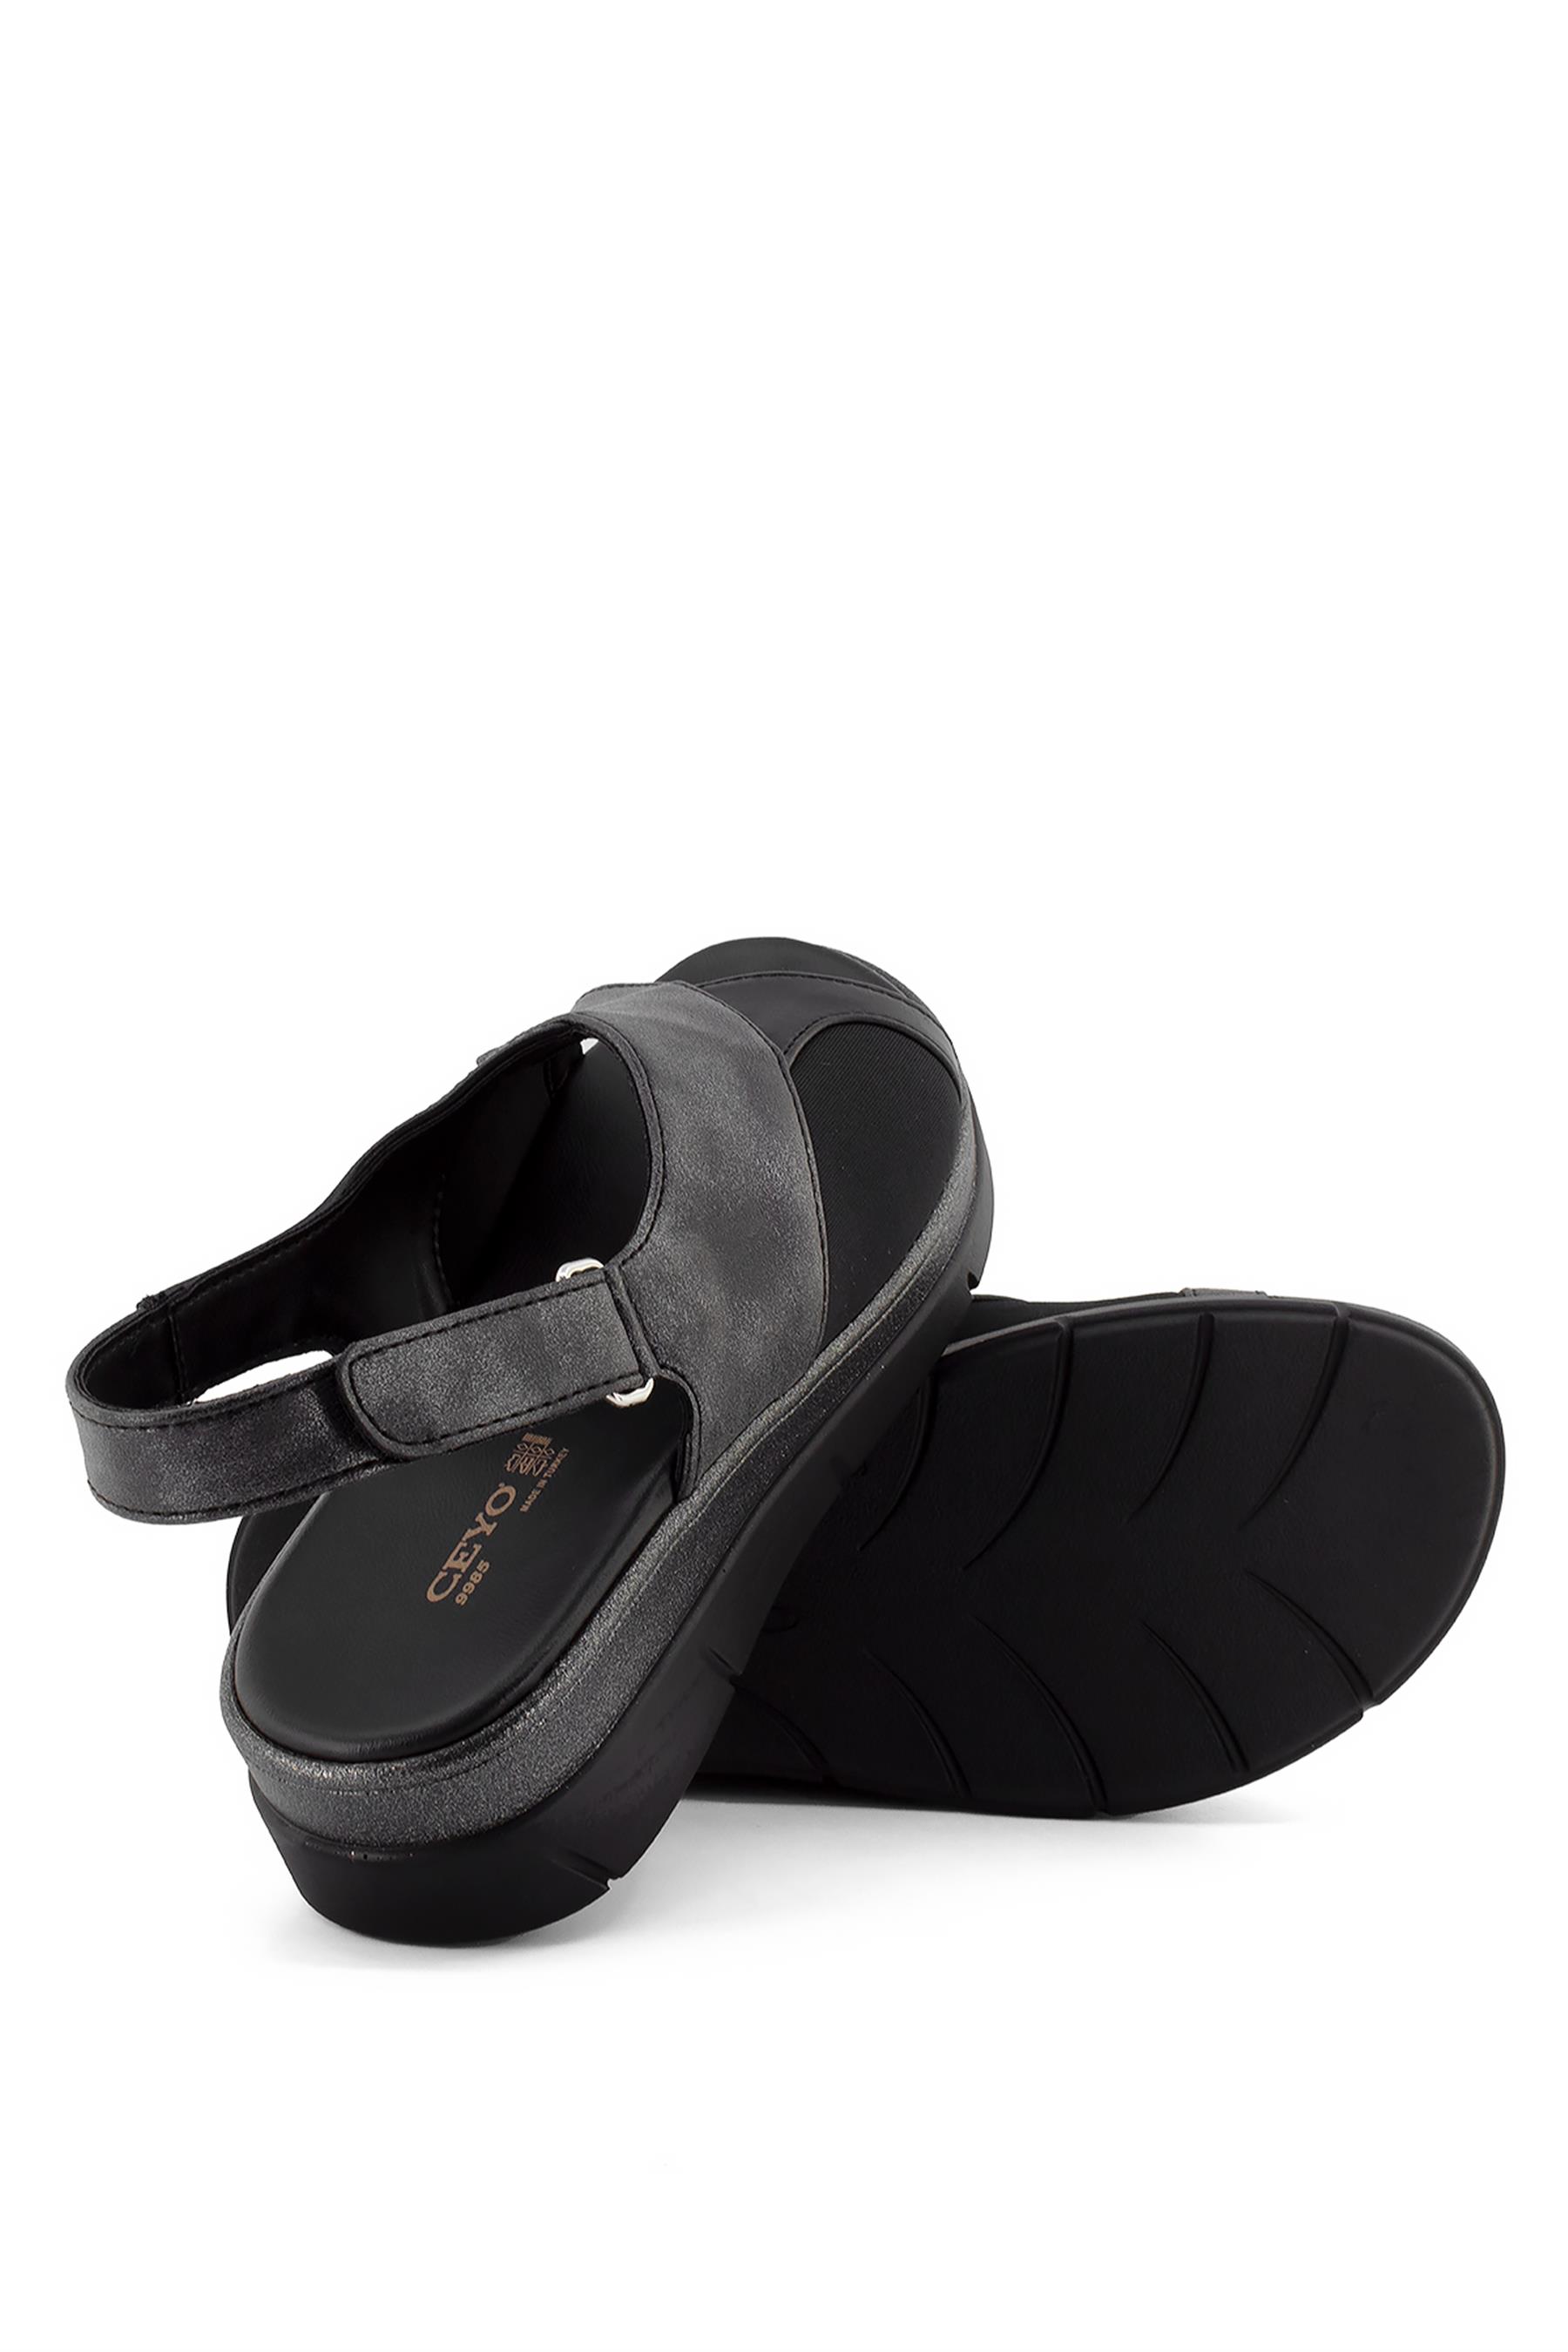 Ceyo 9985 Kadın Sandalet Siyah - Ayakkabı Fuarı Elit